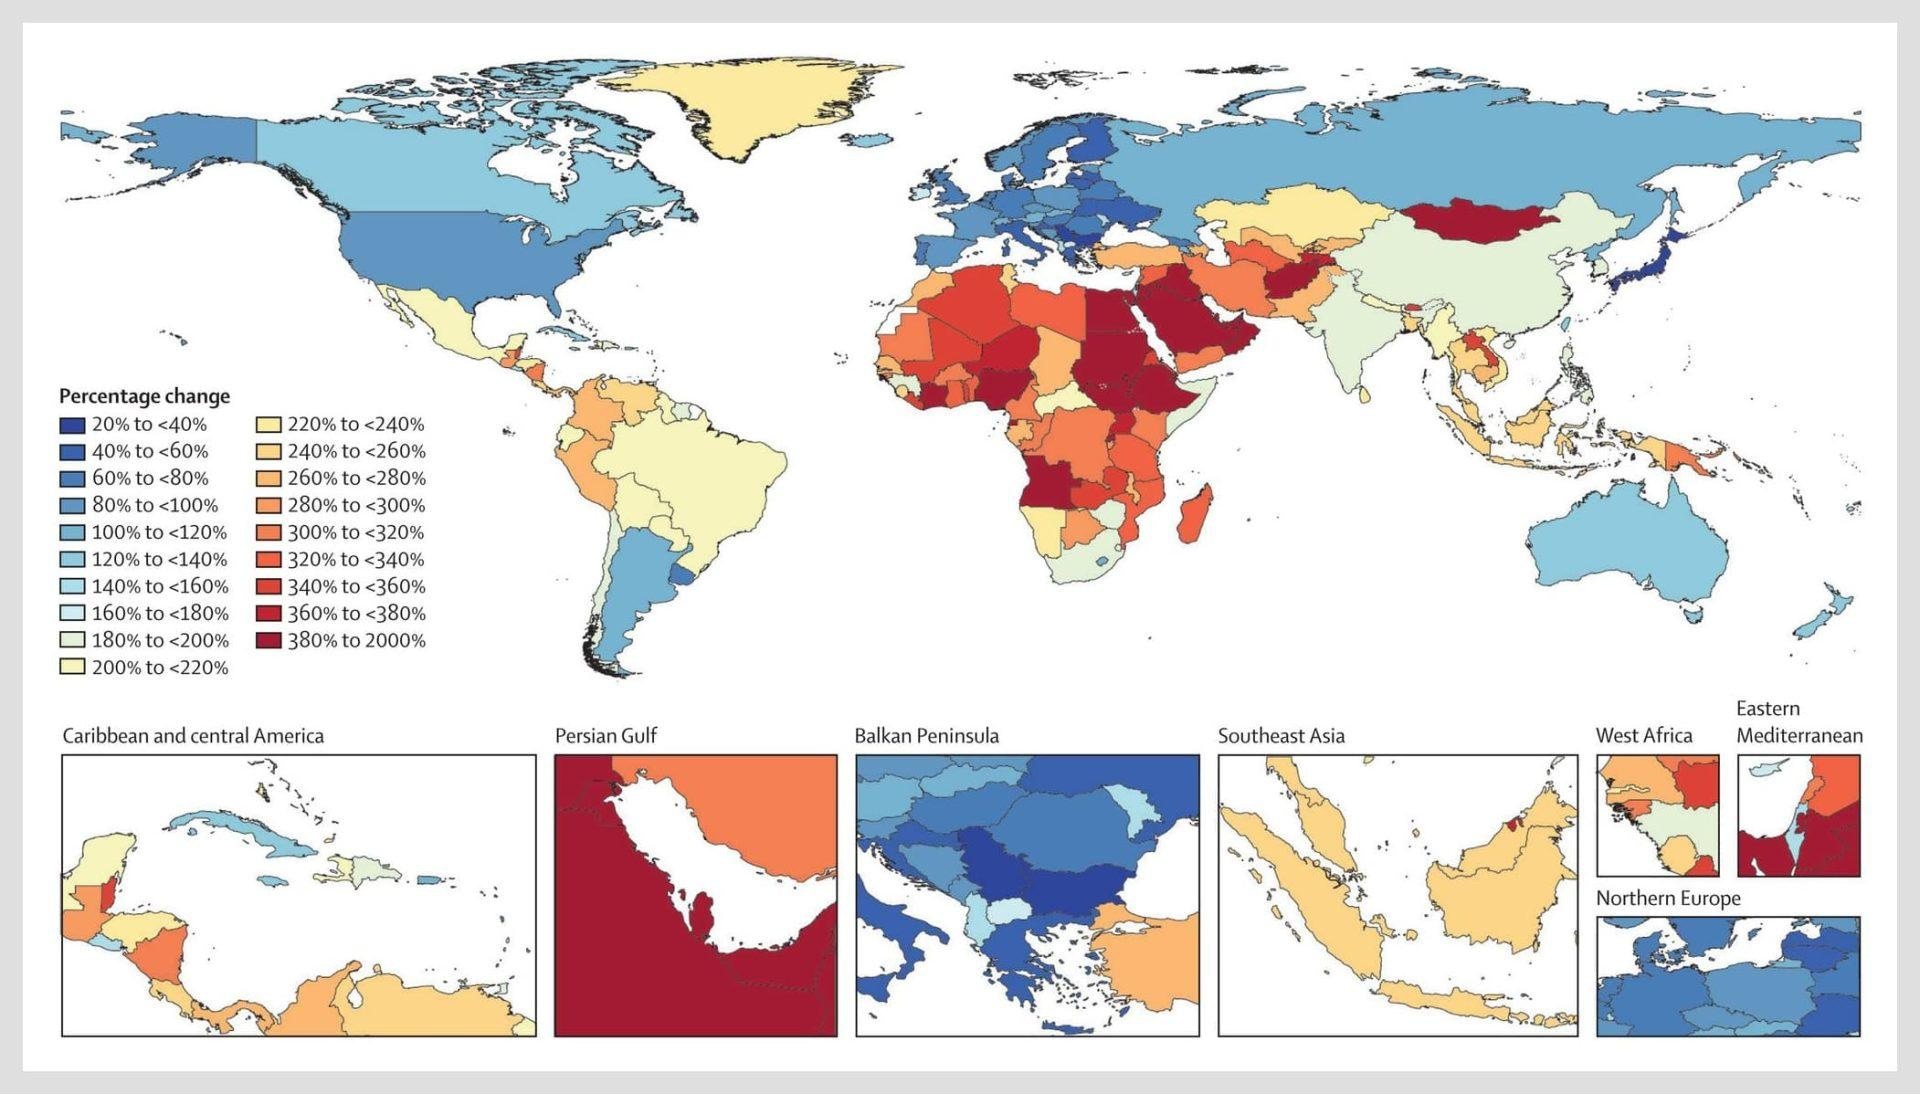 sağlık-haber-dünya-demans-oranları-2050-son-araştırma-göstergeleri-zeytin-yağ-zamanları-üç katına